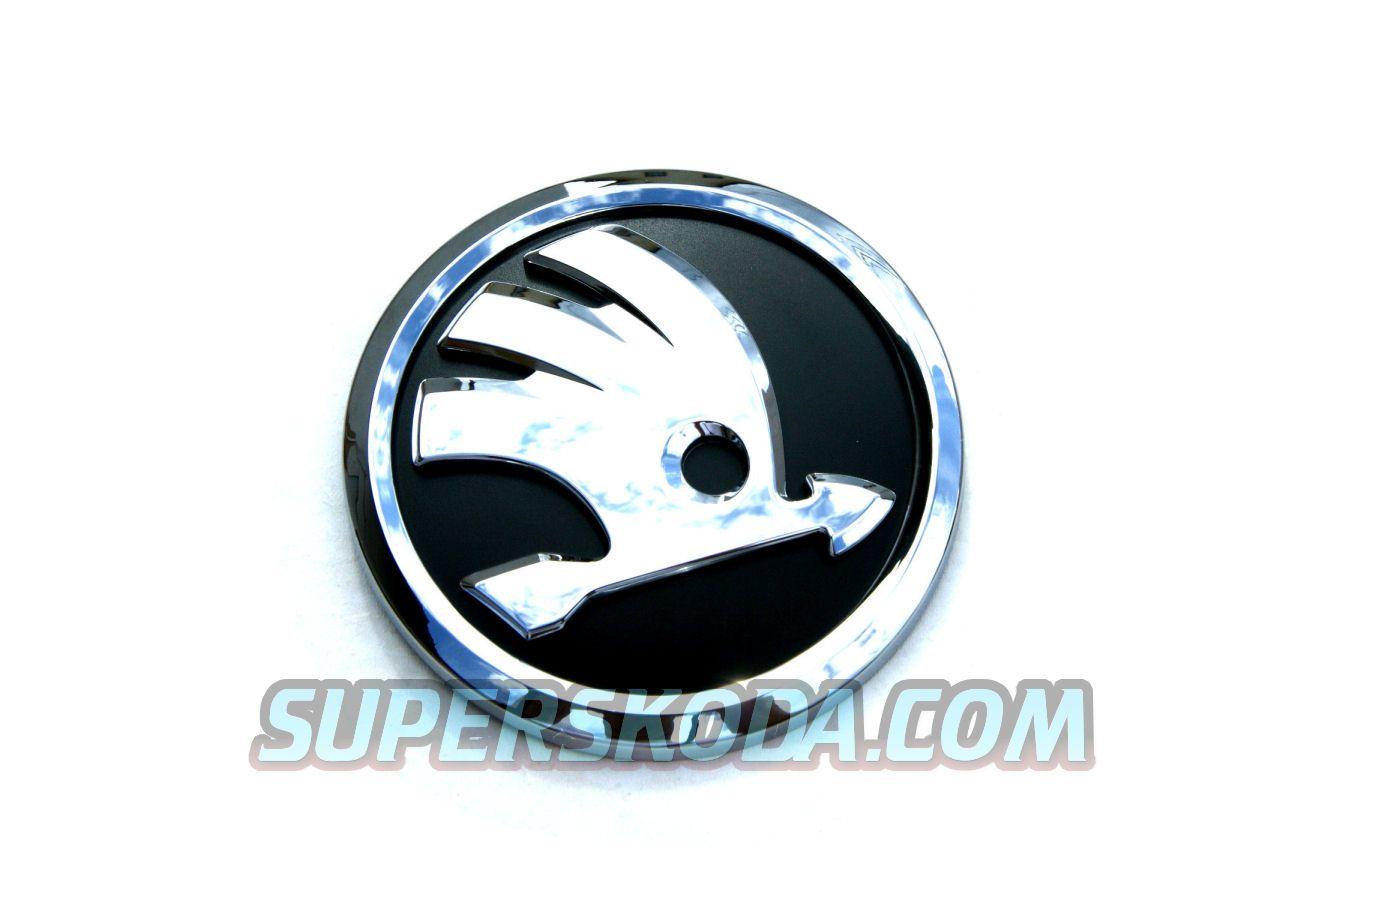 Skoda New Logo - Citigo - front emblem with new 2012 logo : superskoda.com